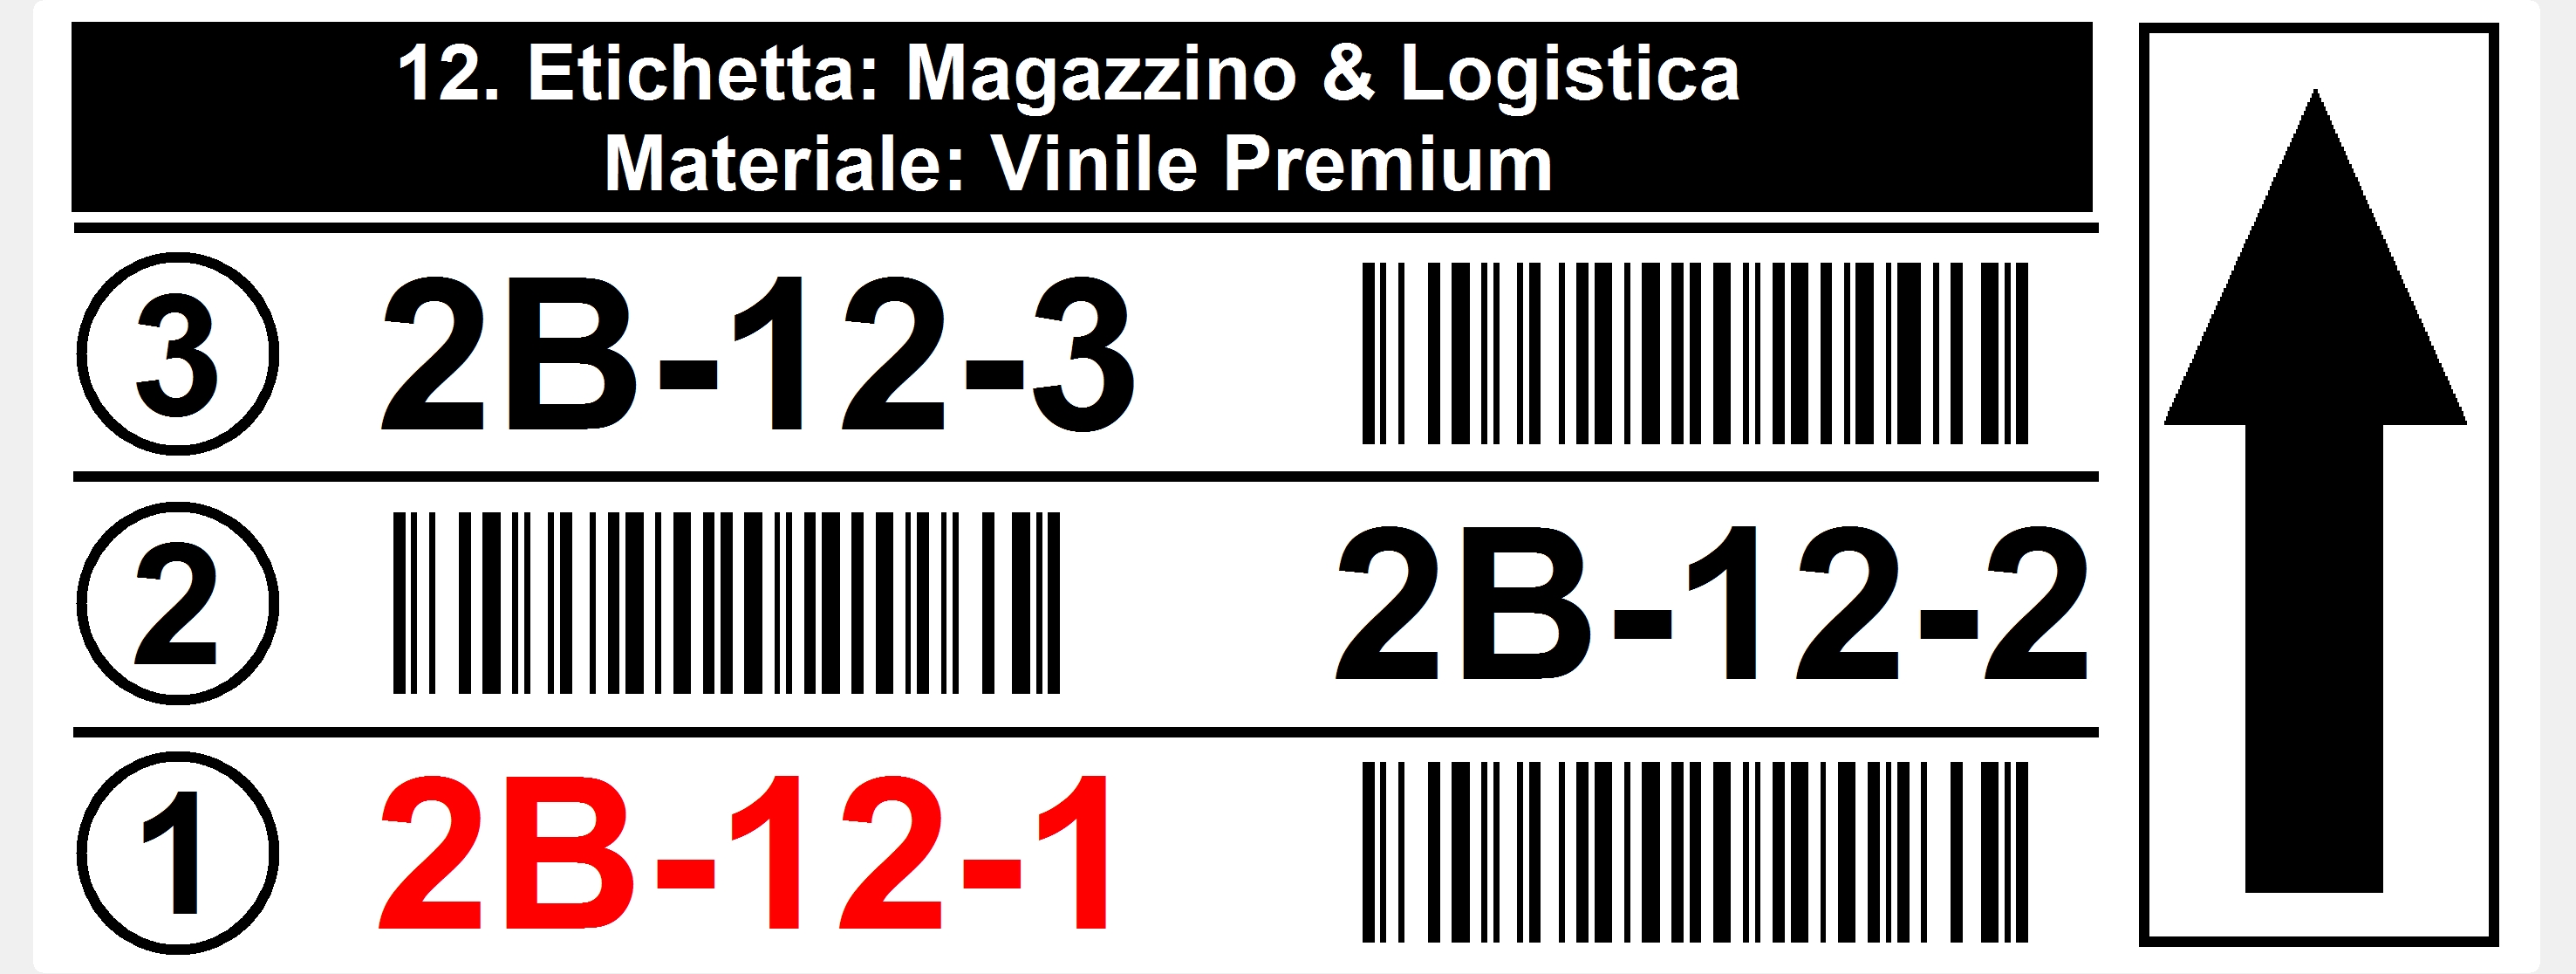 12. Barcode Posizione 25 x 10 cm